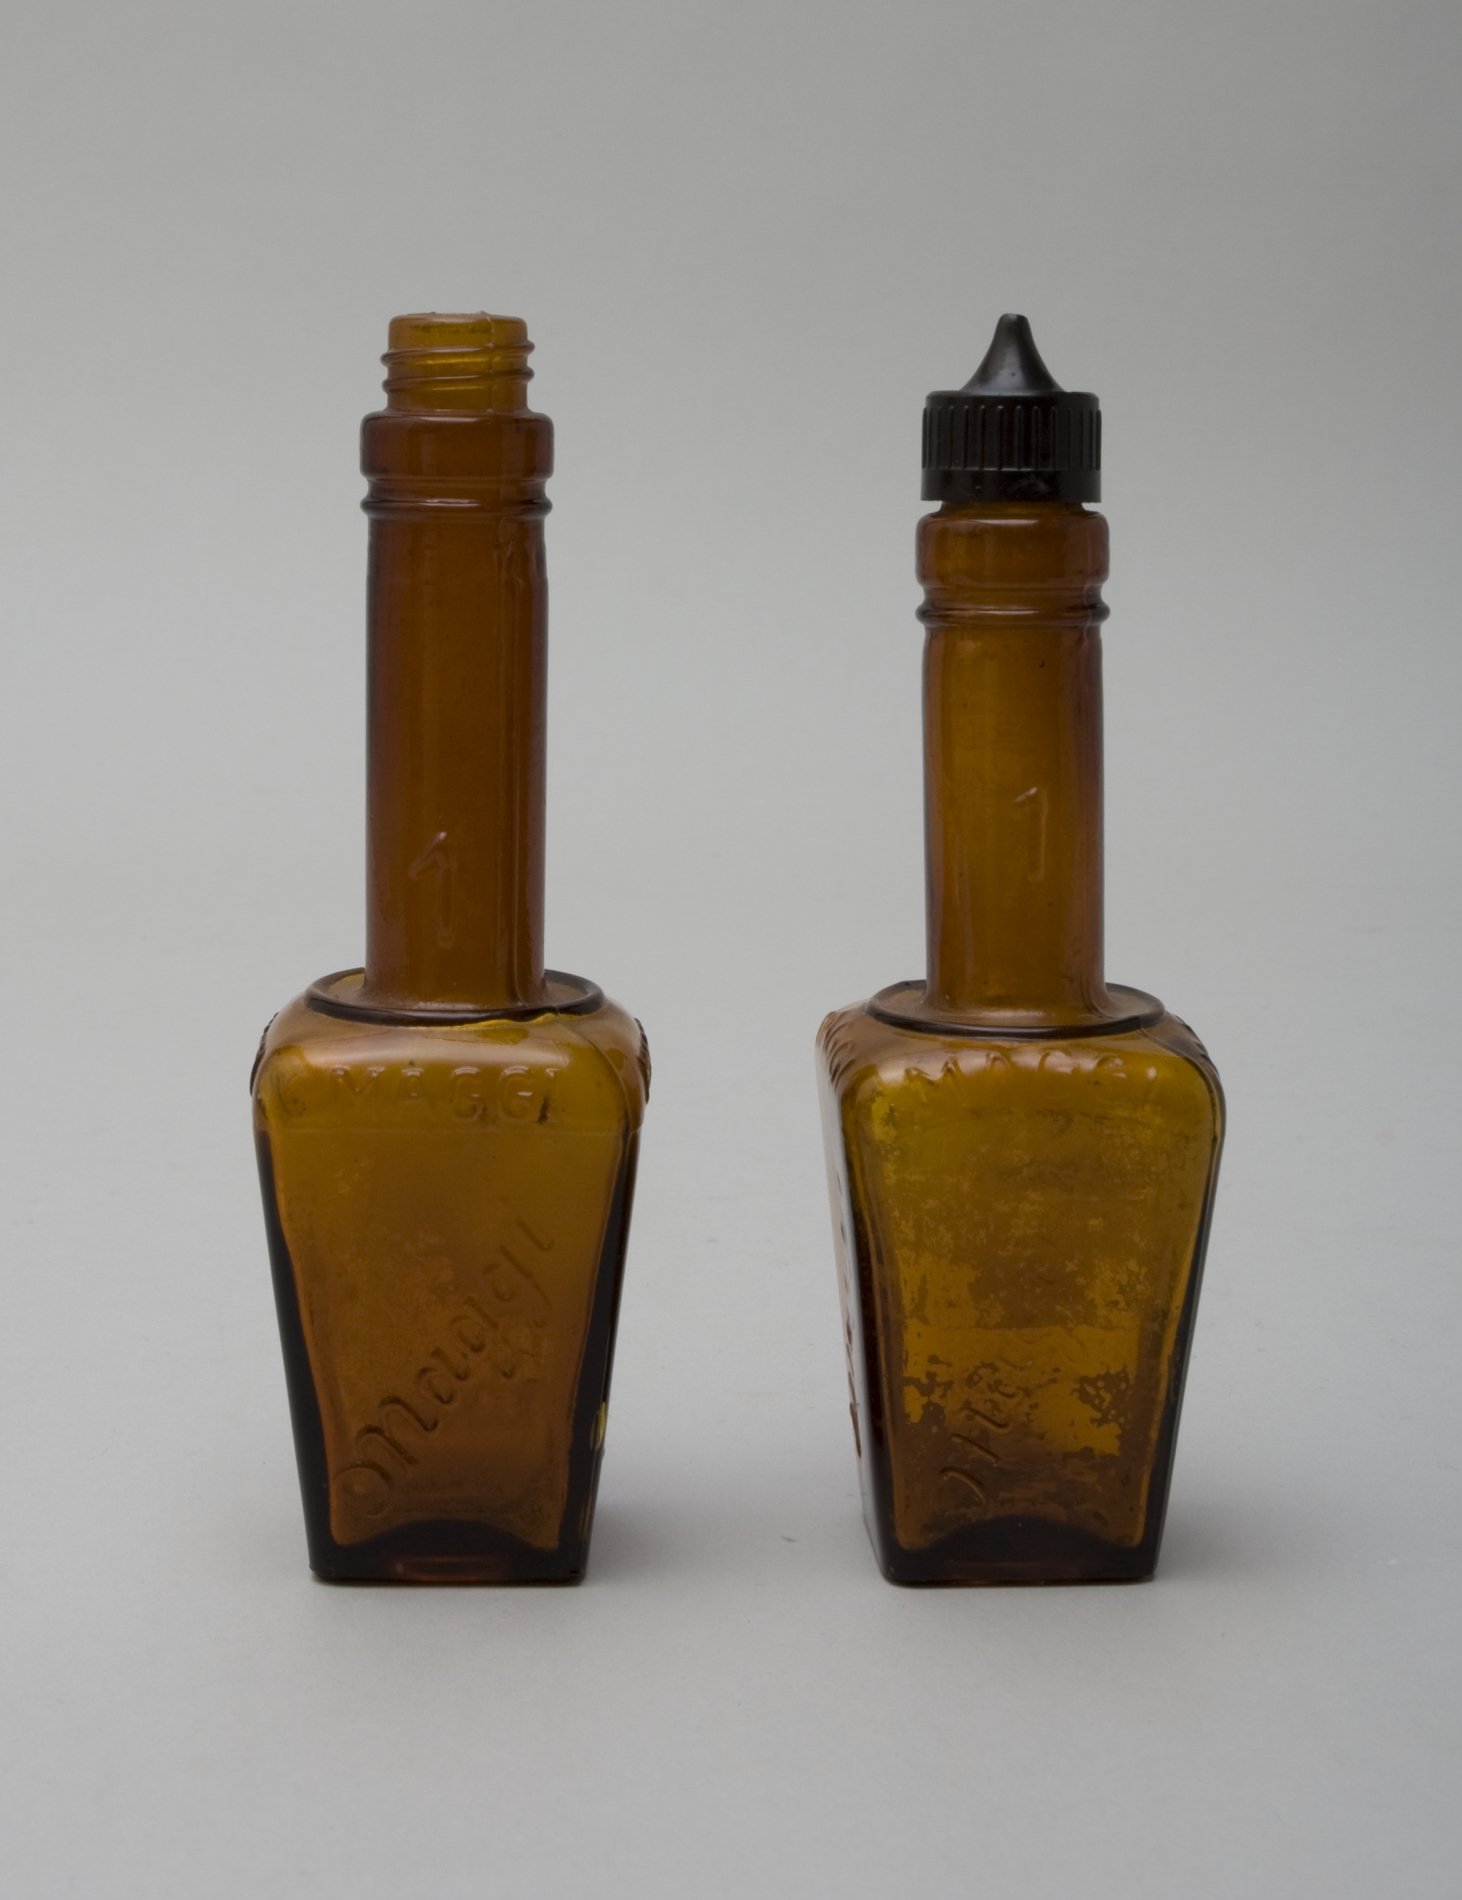 Zwei "Maggi" Würz-Flaschen "1" (Stiftung Domäne Dahlem - Landgut und Museum, Weiternutzung nur mit Genehmigung des Museums CC BY-NC-SA)